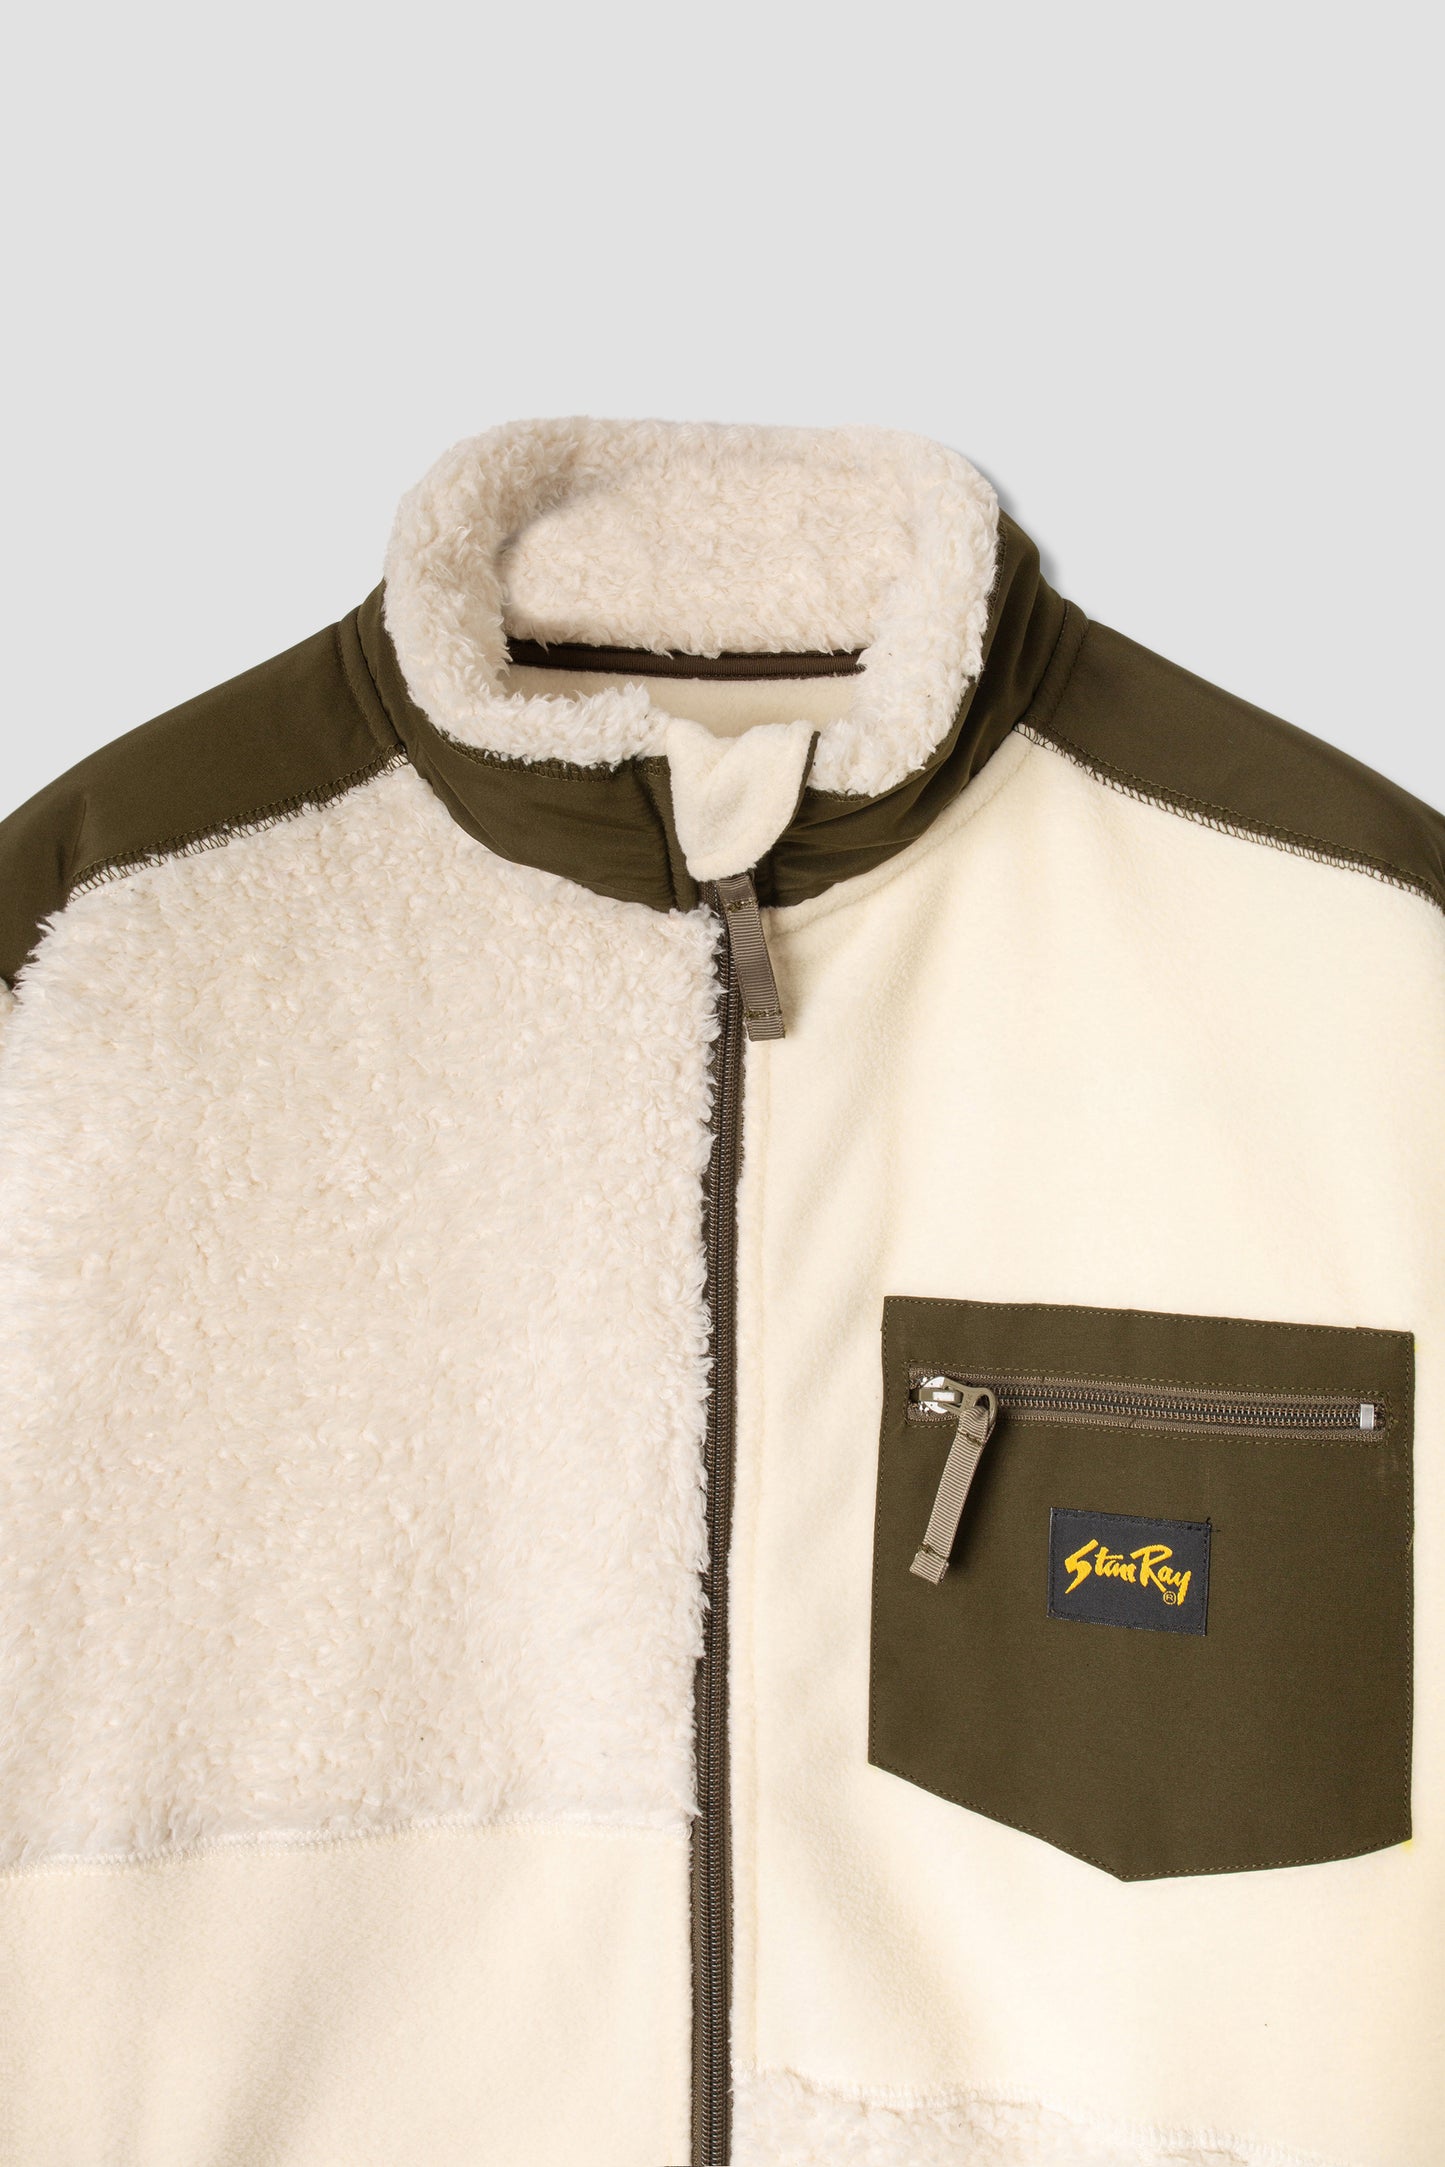 Patchwork Fleece Jacket (Natural / Olive)